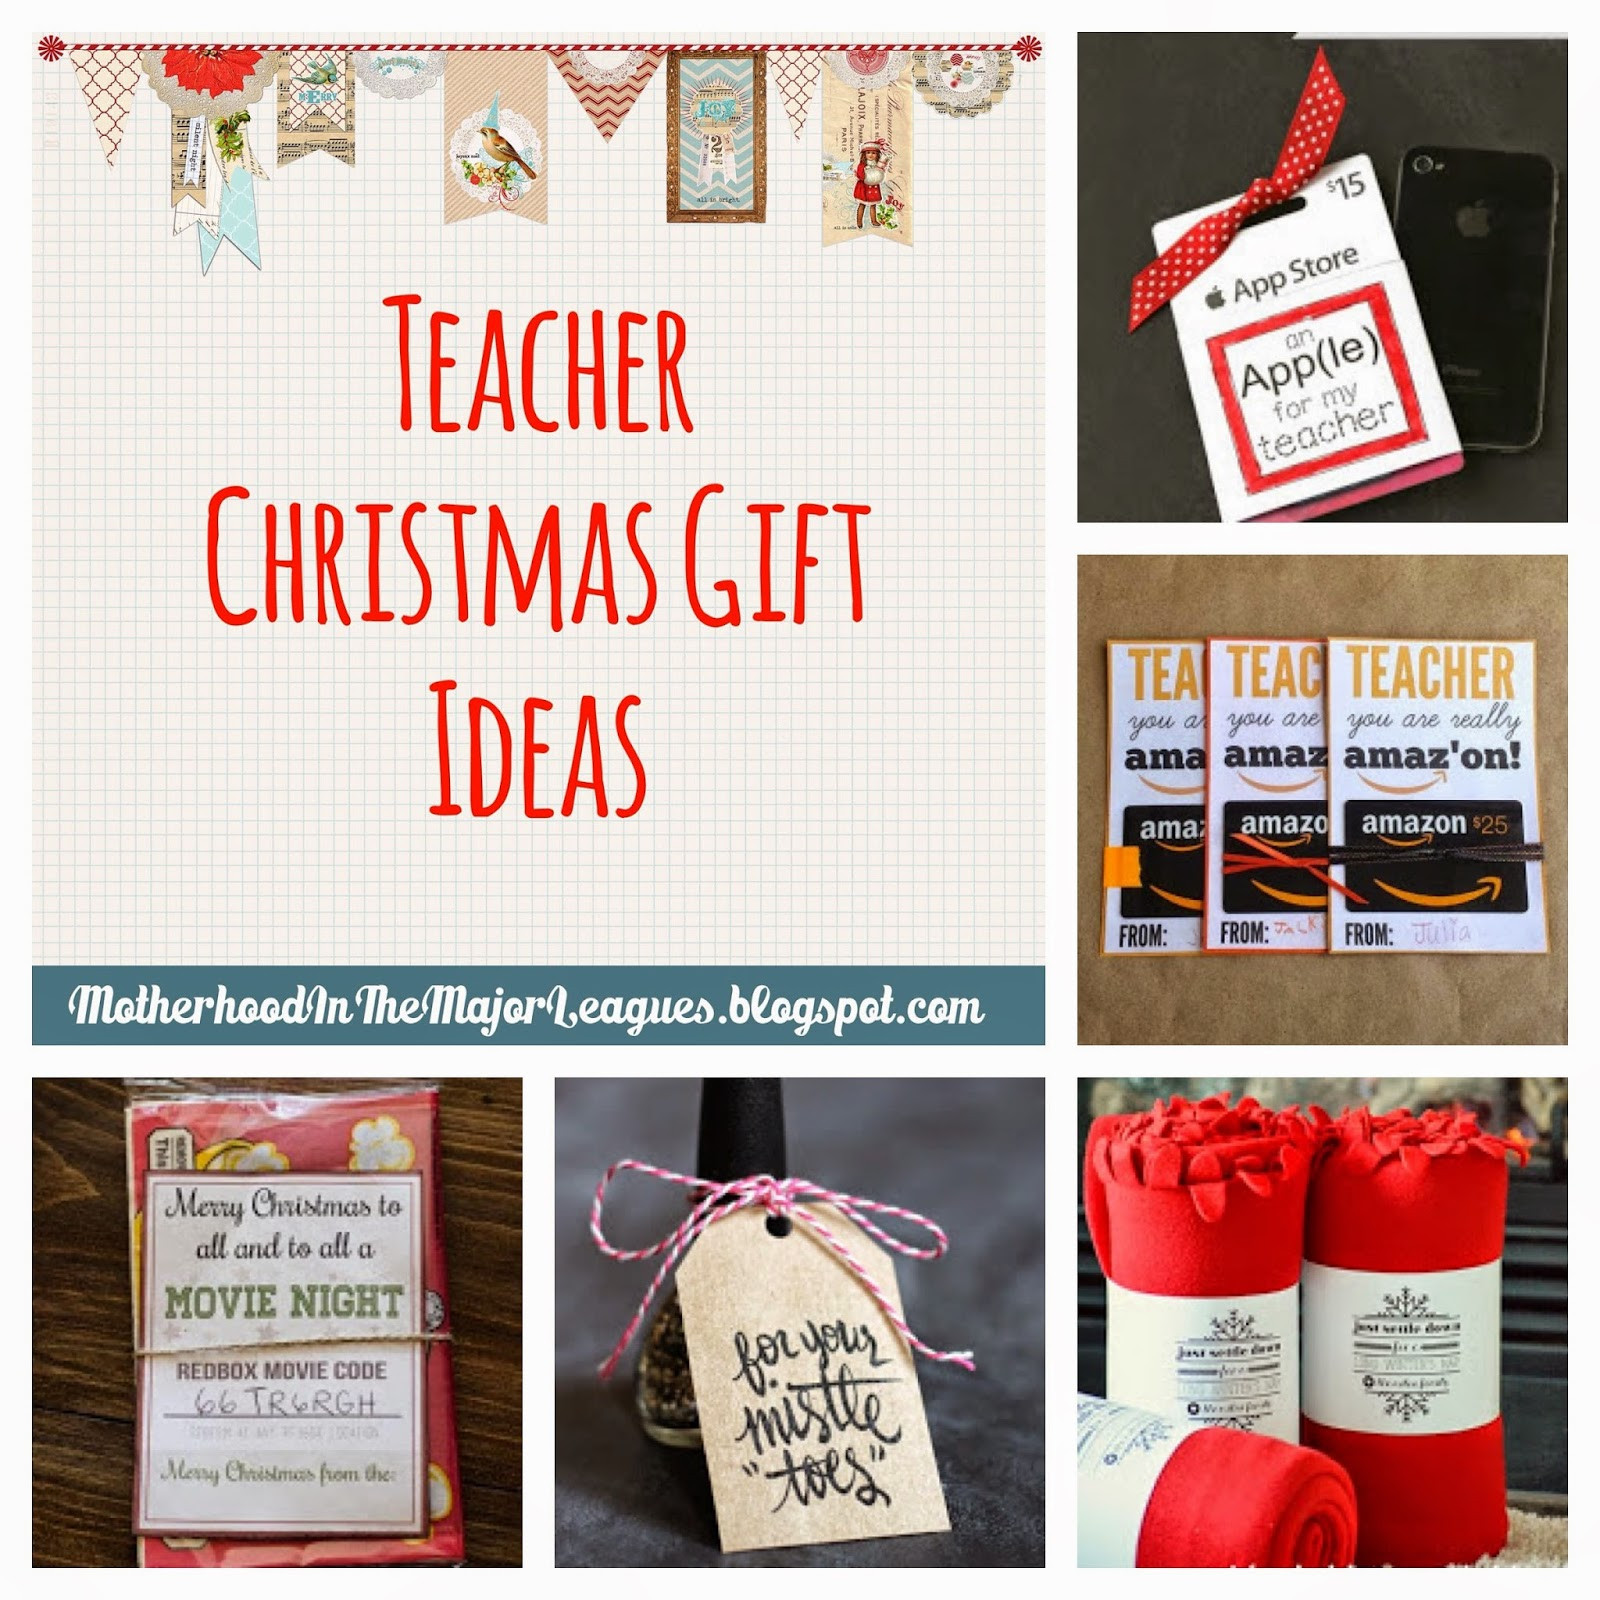 Teacher Holiday Gift Ideas
 Motherhood in the Major Leagues Teacher Christmas Gift Ideas